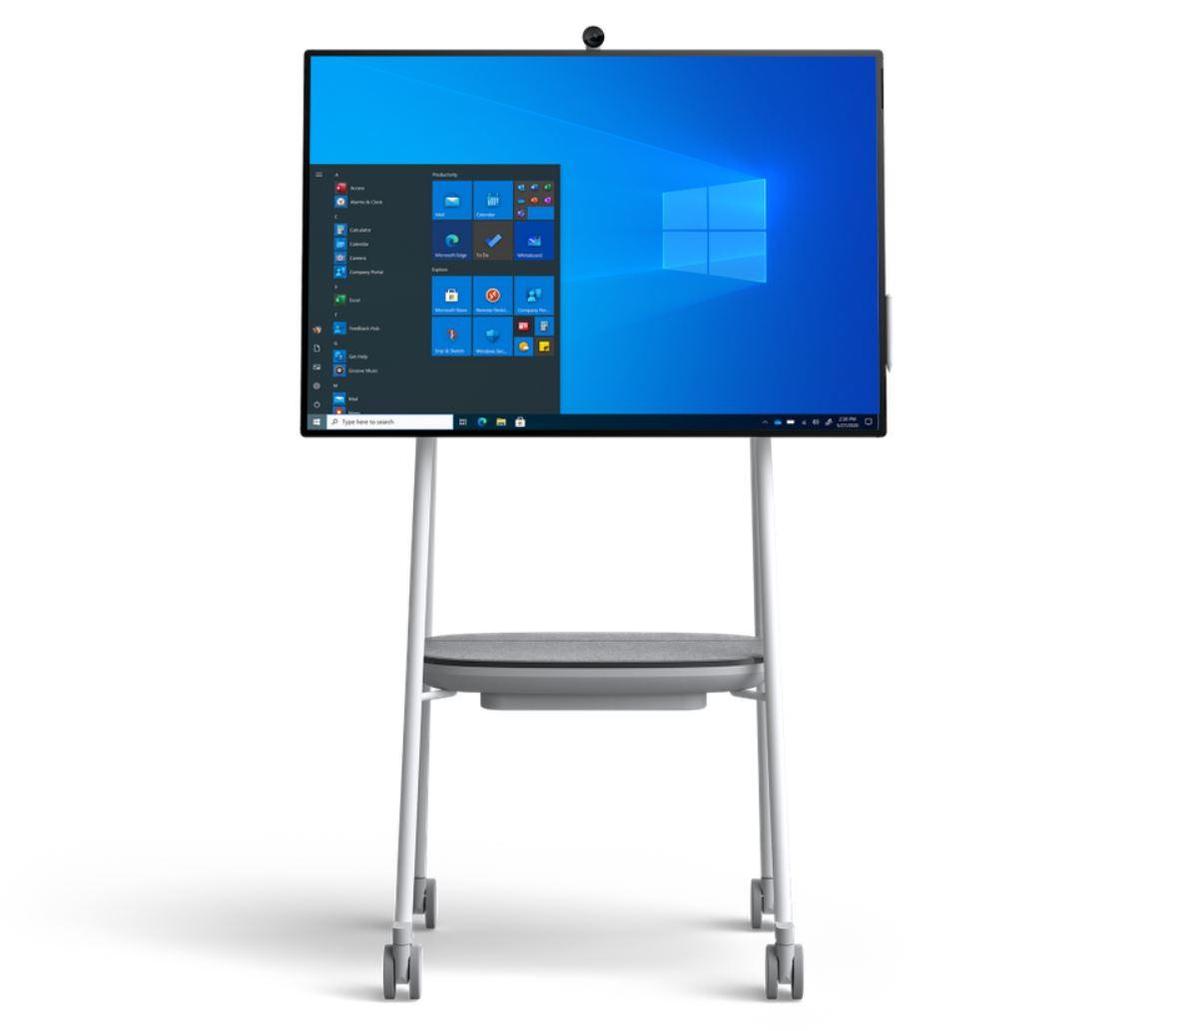 微软将Windows 10 Pro企业版引入Surface Hub 2S